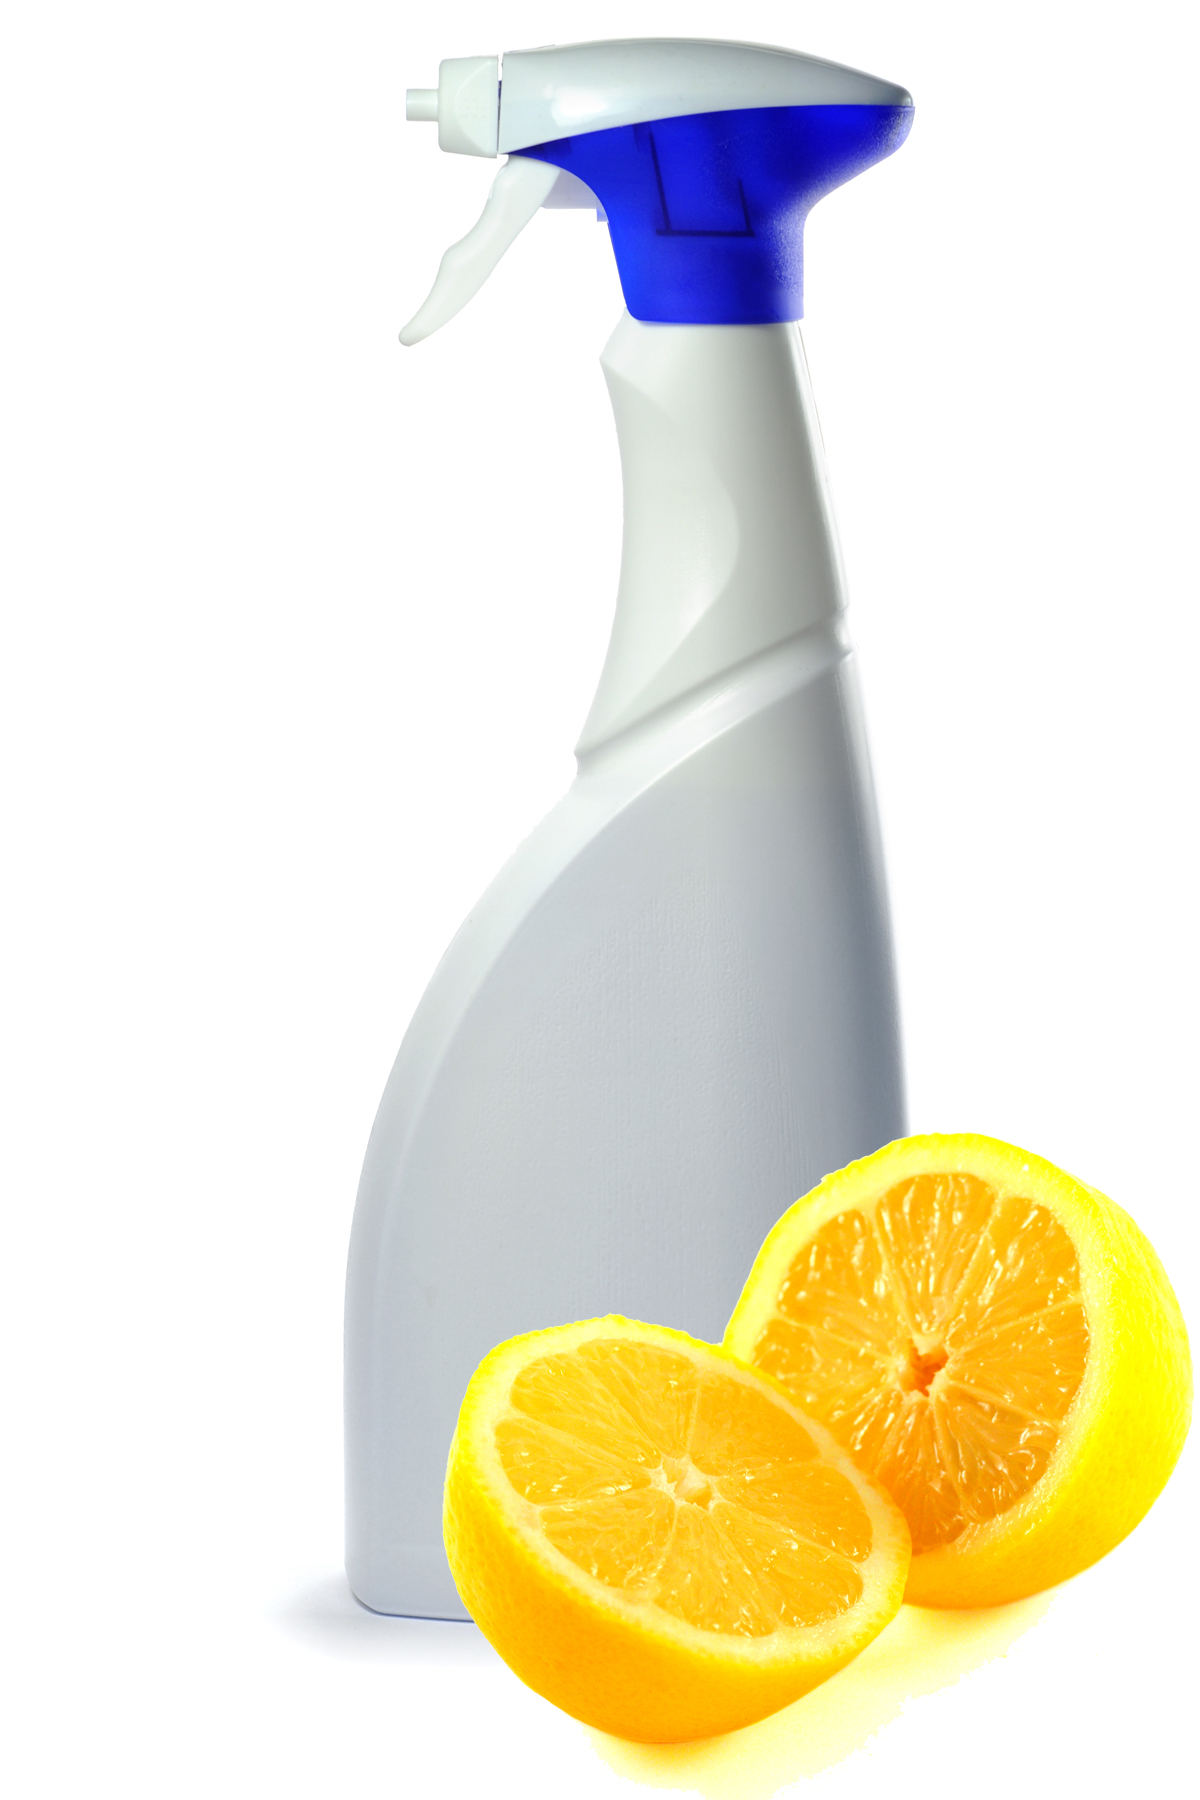 spray-bottle-lemon